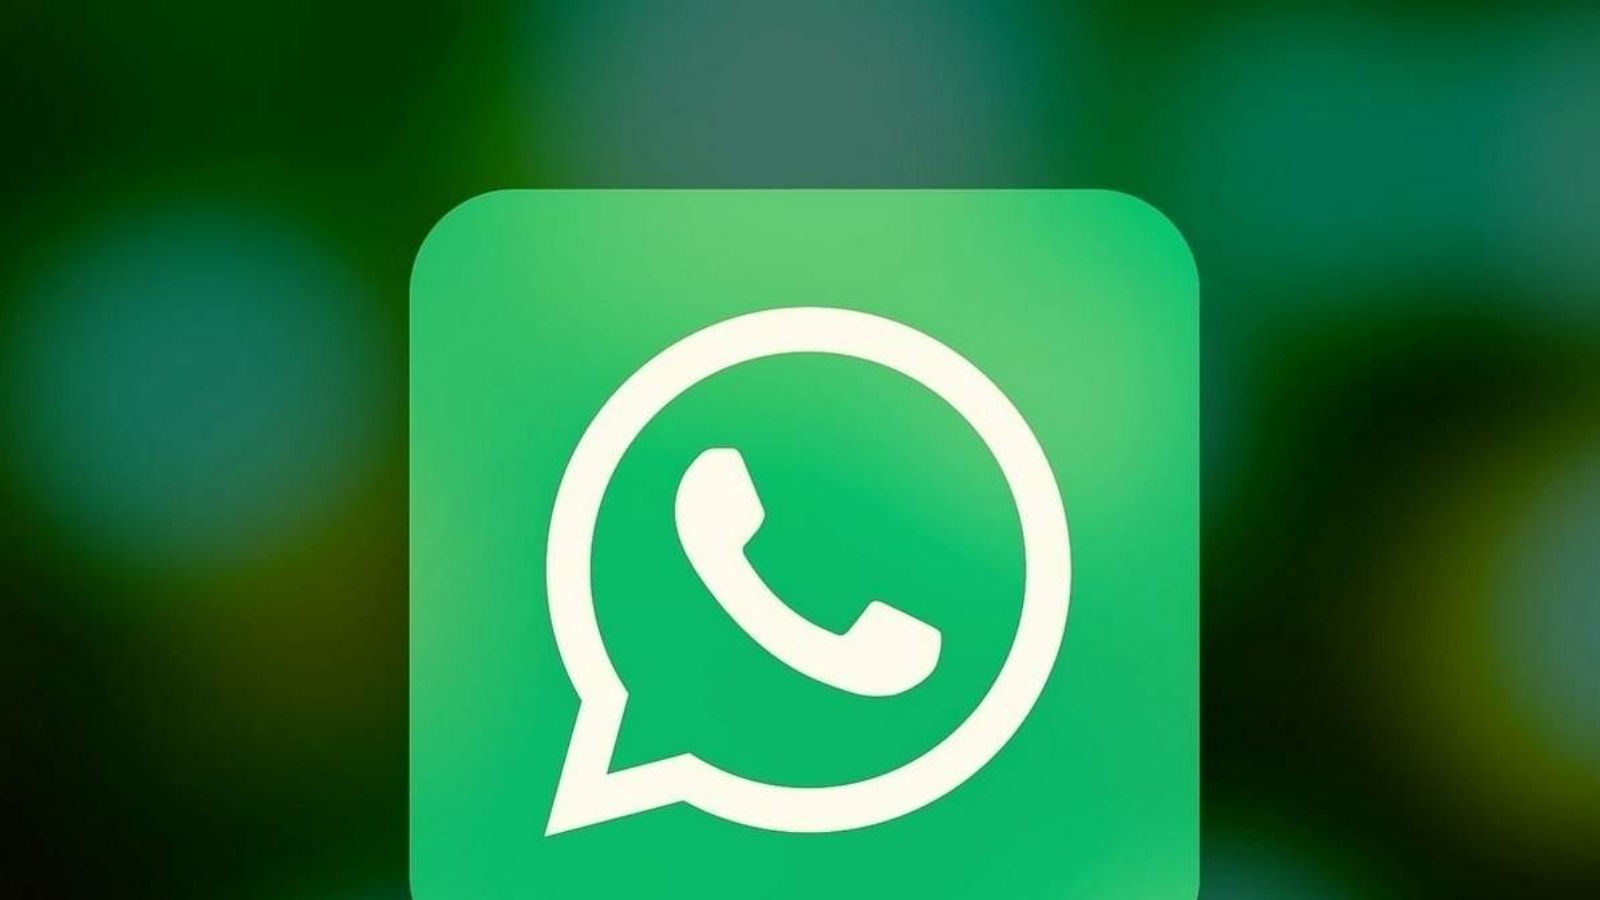 पूरी तरह से बदल गया है WhatsApp, आ गए कई नए जबरदस्त फीचर्स